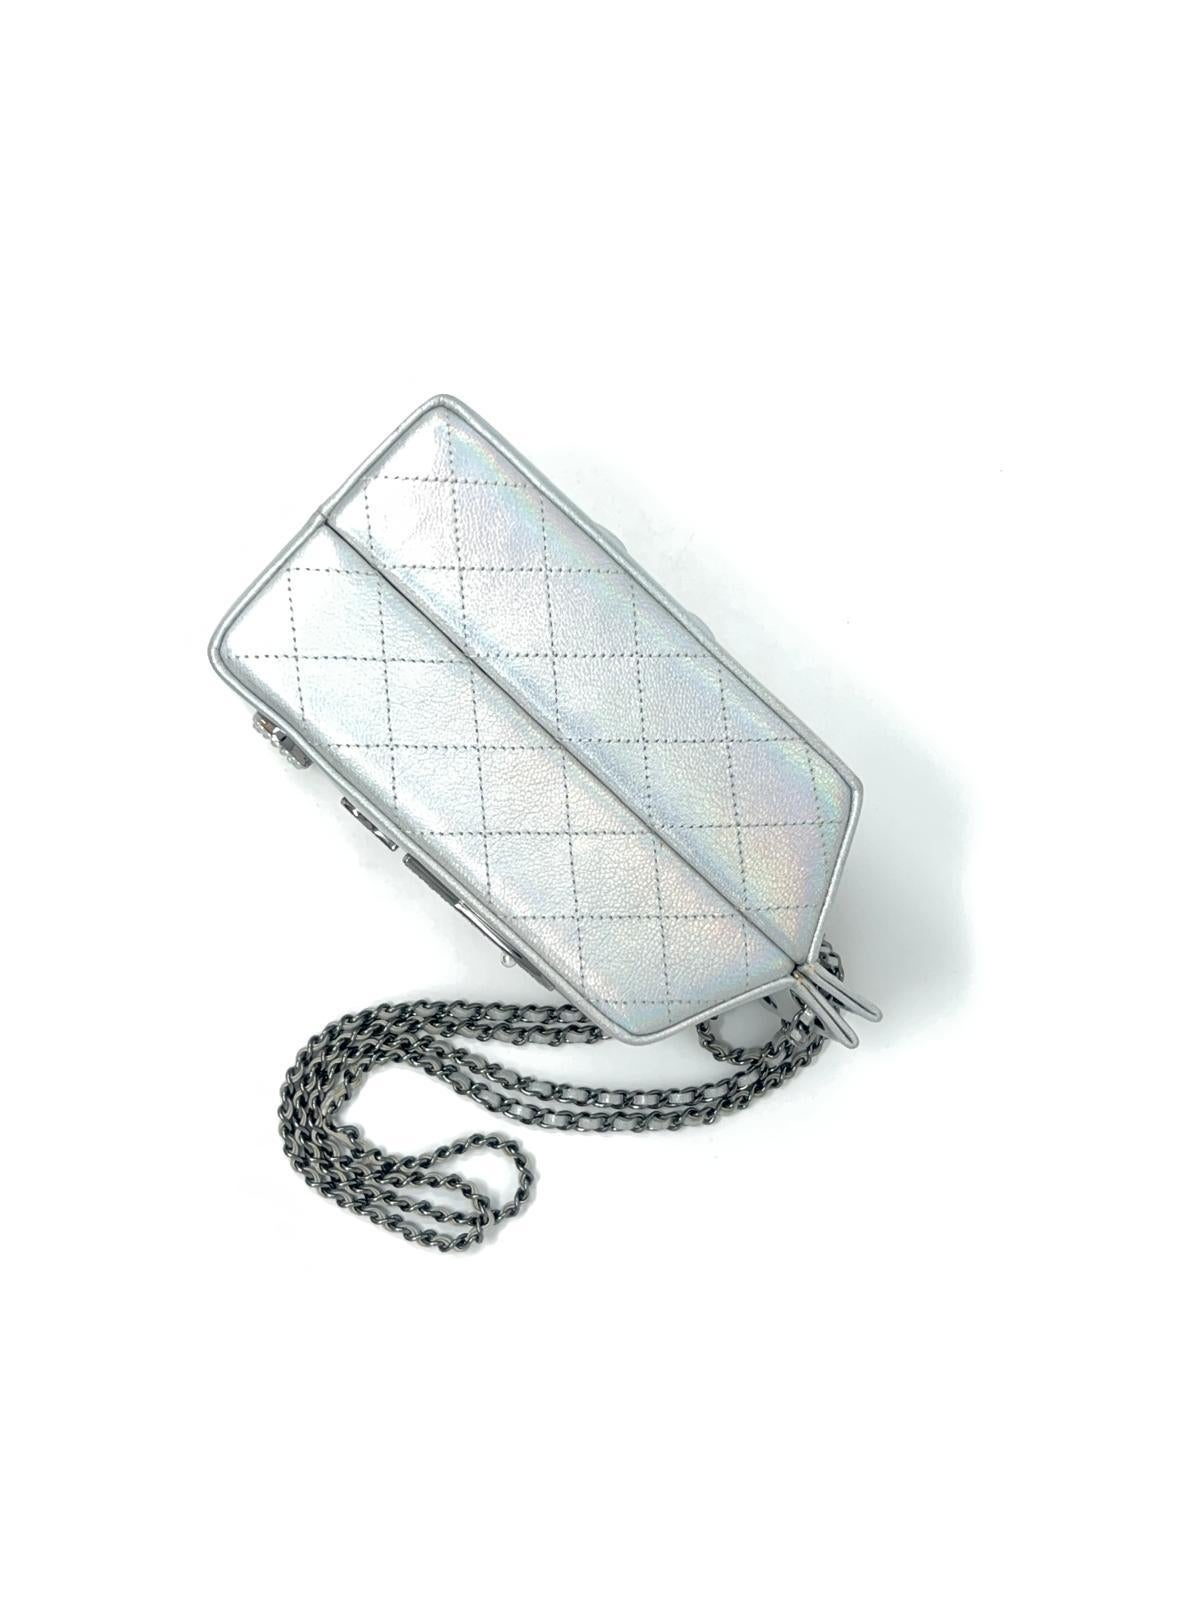 Chanel Iridescent Lait de Coco Milk Carton Bag Ruthenium Hardware 2014 For Sale 1